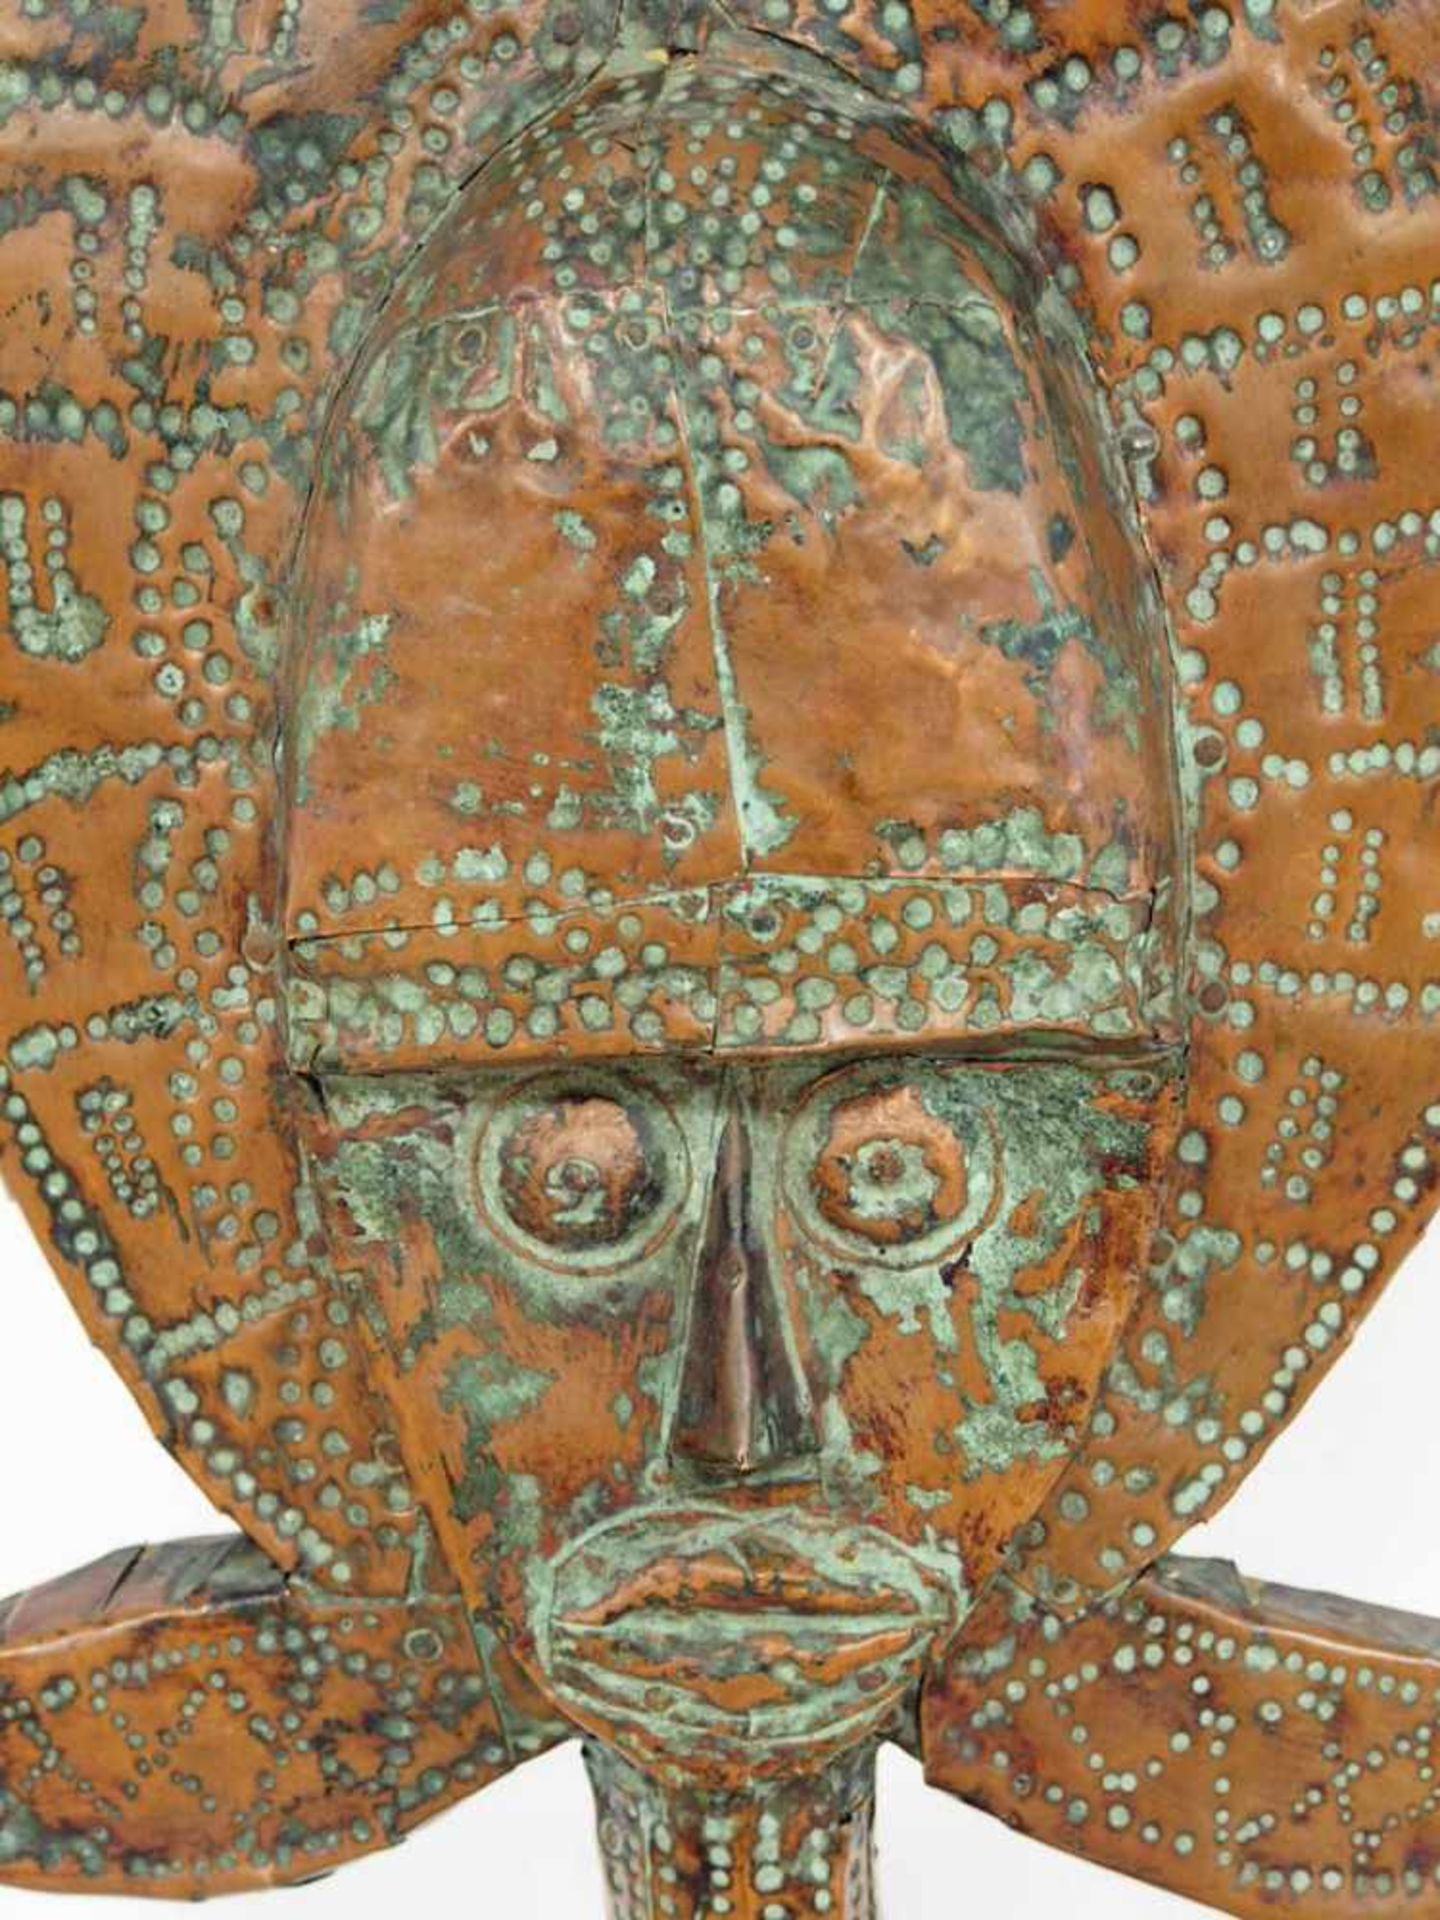 Bakota-ReliquienstatueHolz, geschnitzt, gehämmertes Bronzeblech, Kongo 20. Jh., Höhe 72 cm- - -25.00 - Bild 2 aus 2